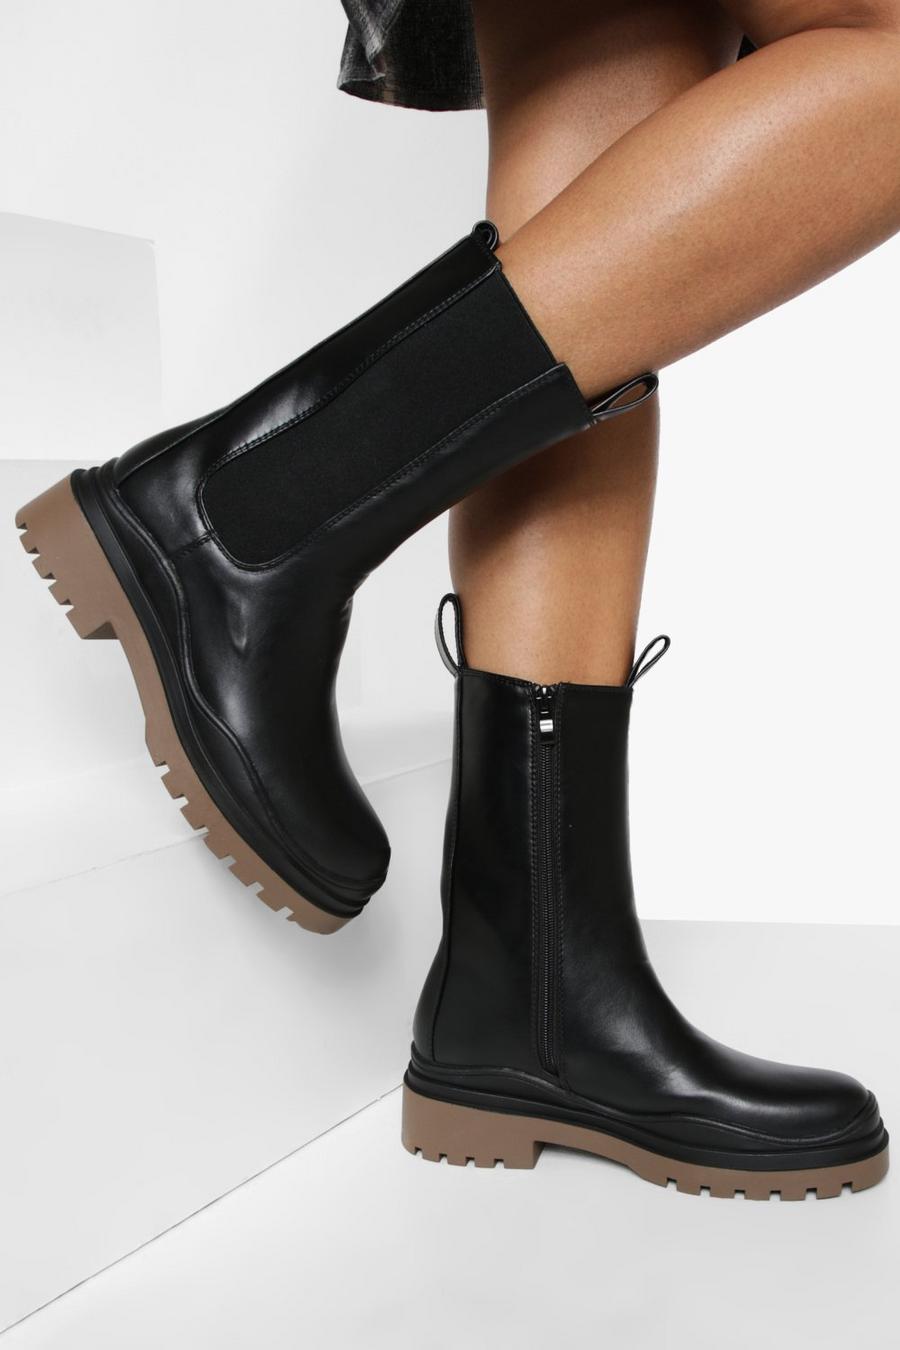 Femme Chaussures Bottes Bottes hauteur mi-mollet CLW326700 Boots Cult en coloris Noir 